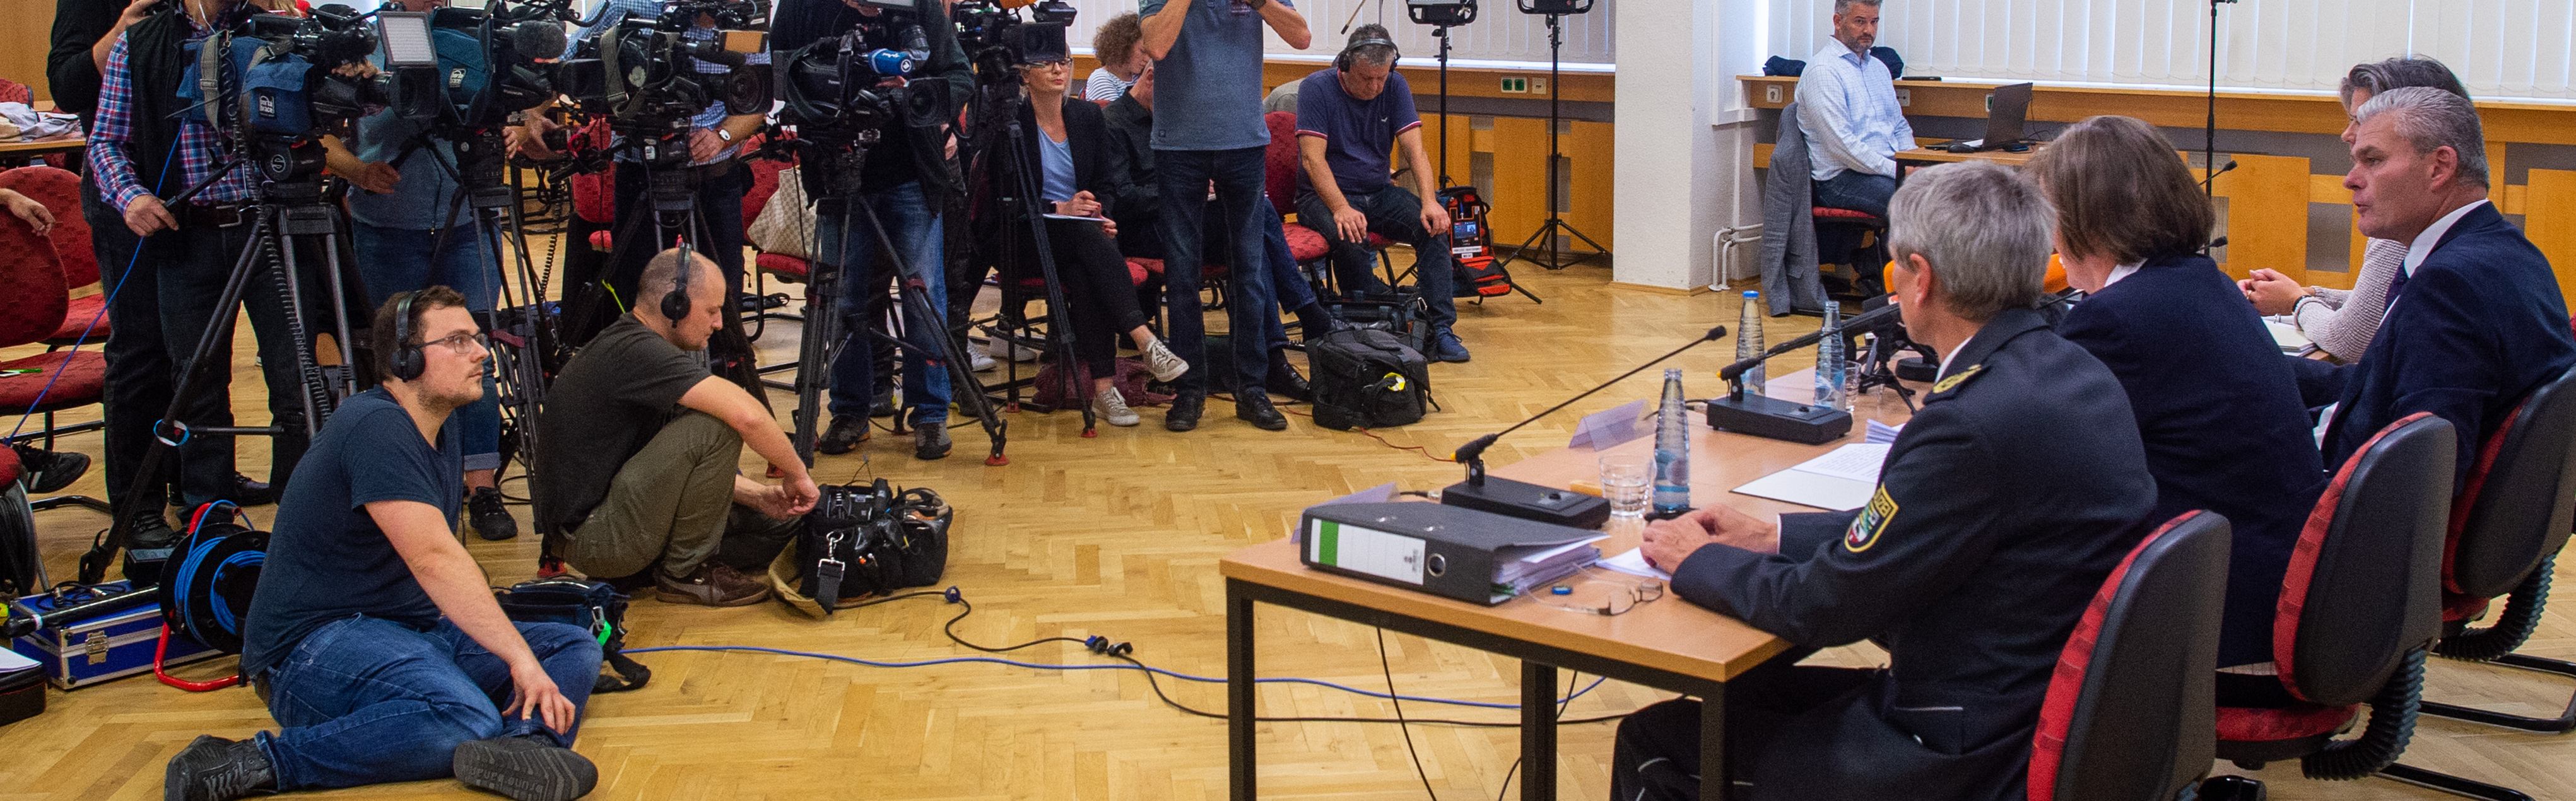 Deutsche Polizei verlor Halle-Attentäter eine Stunde lang aus den Augen